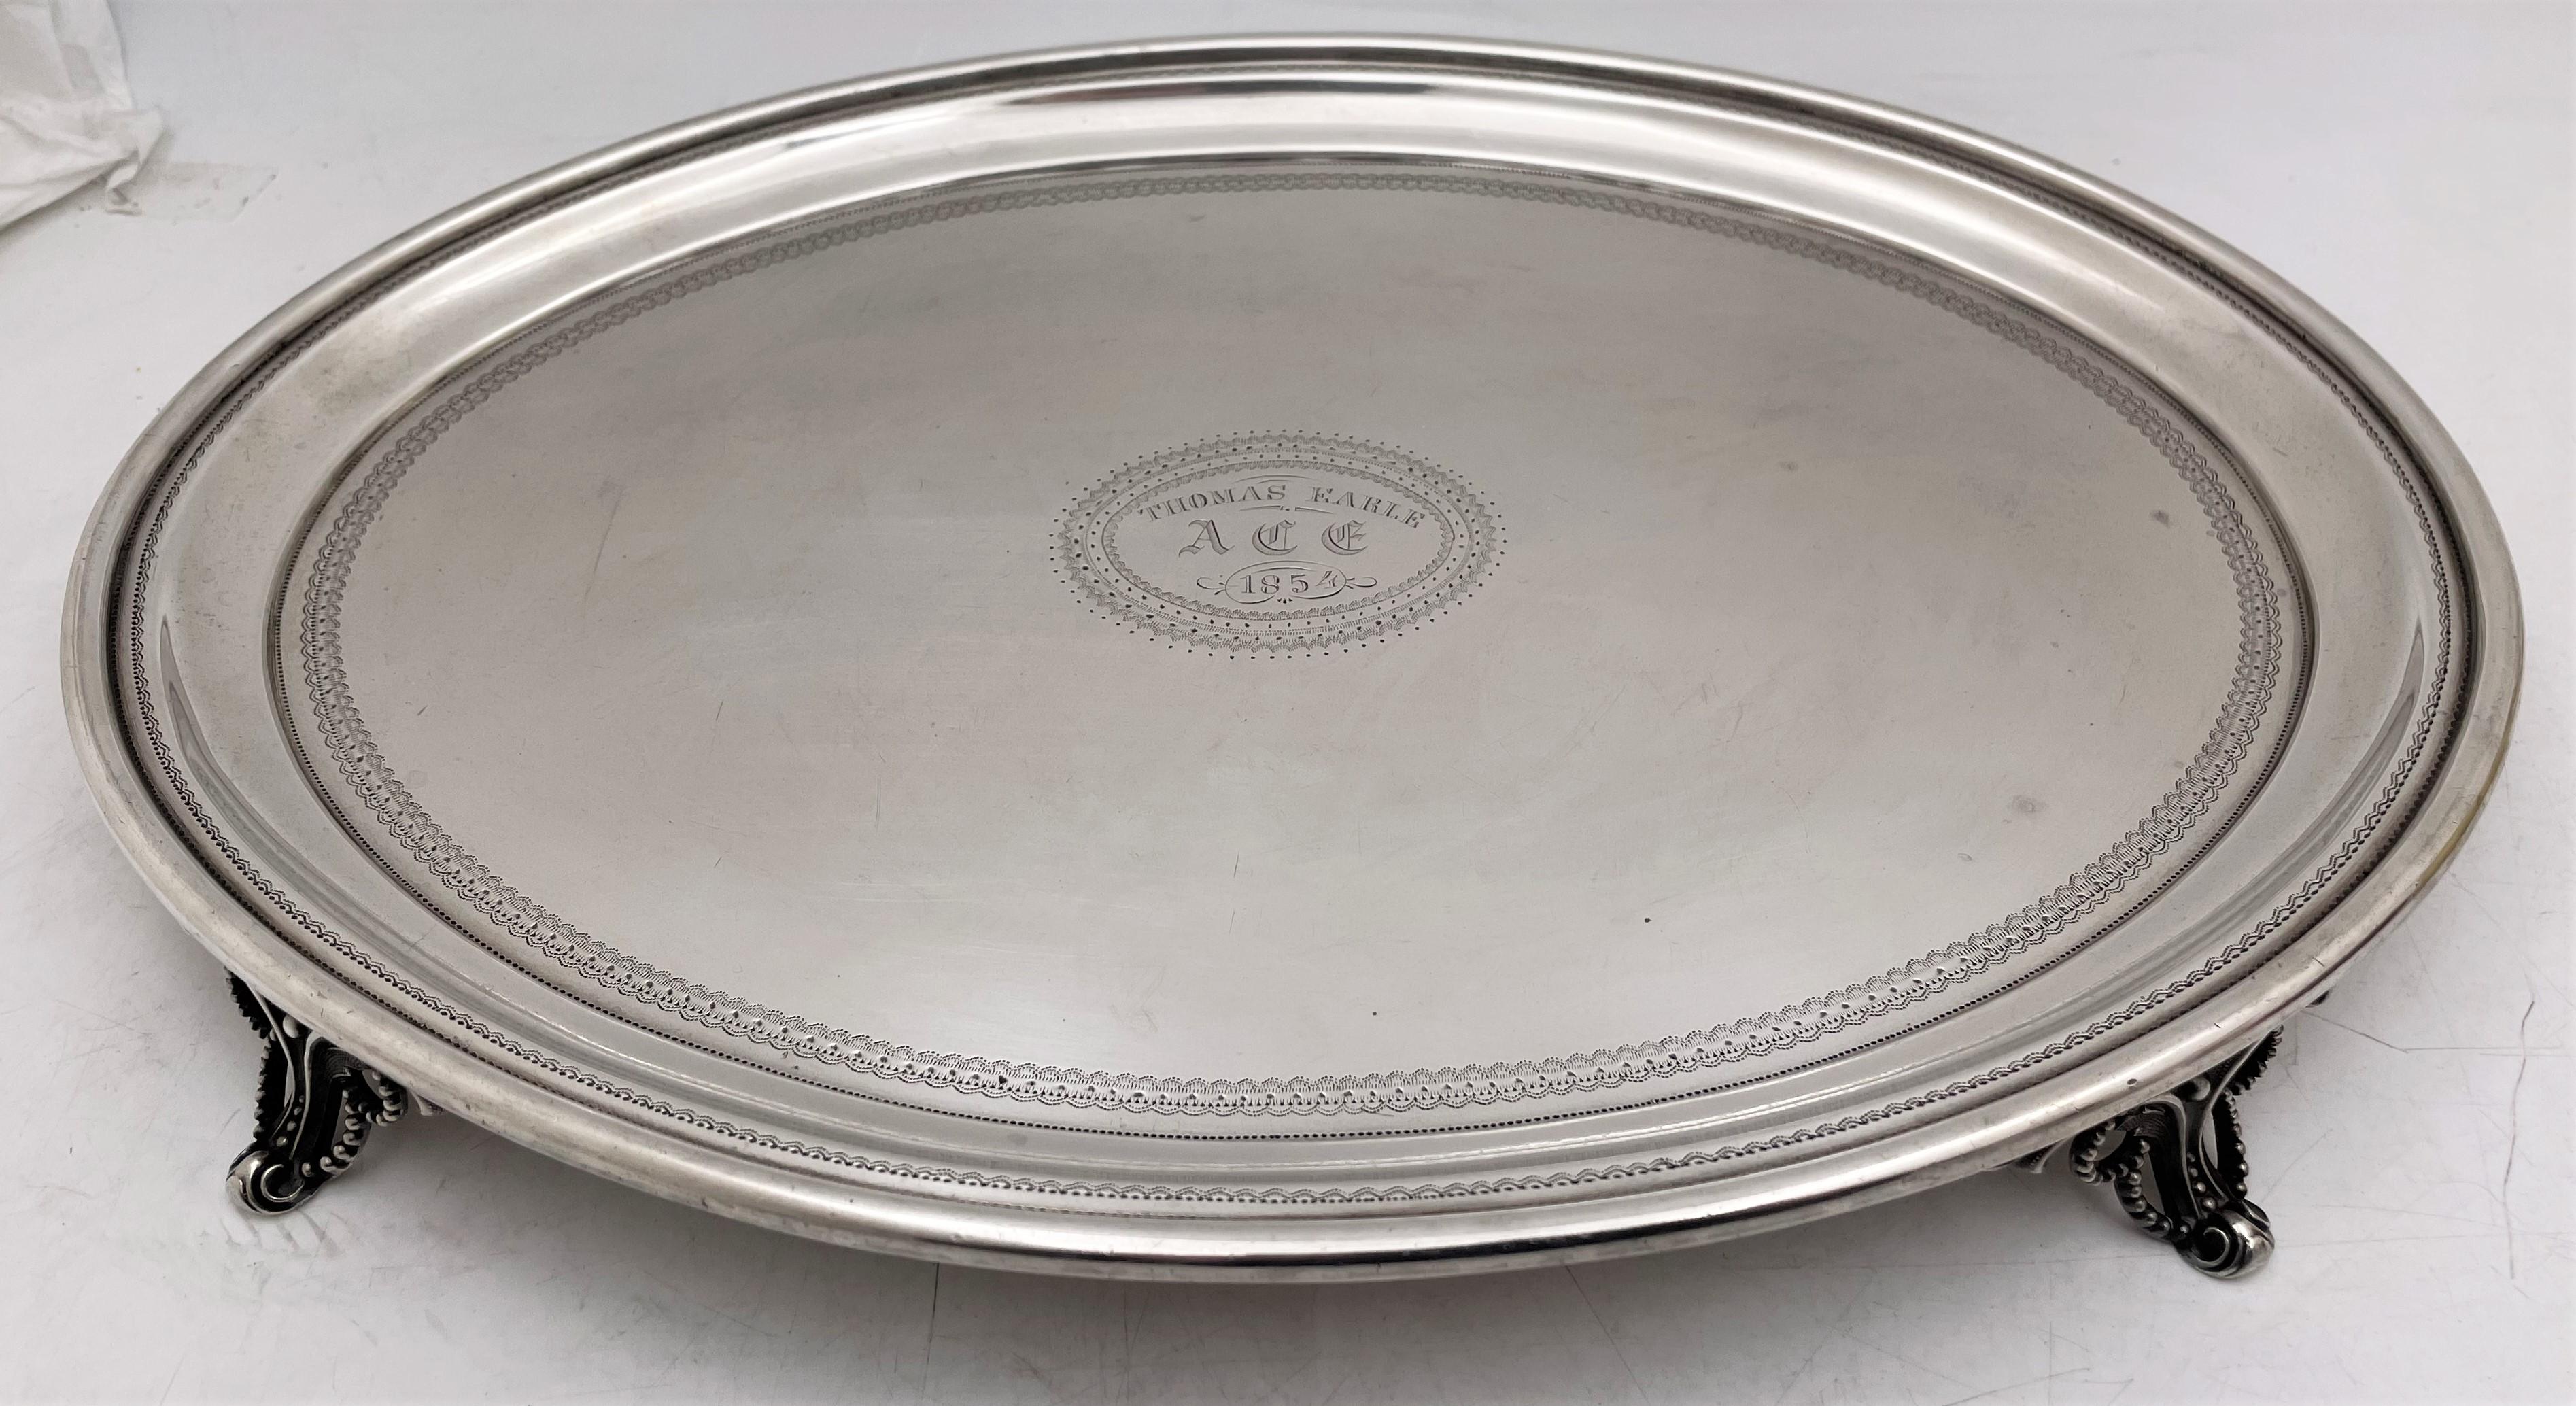 Bailey & Co, salière ou plat en argent sterling reposant sur 4 pieds, du début des années 1850, avec de délicats motifs gravés ornant le plat. Il mesure 14'' de longueur par 10 1/2'' de largeur par 1 1/8'' de hauteur, pèse 29,9 onces troy, et porte